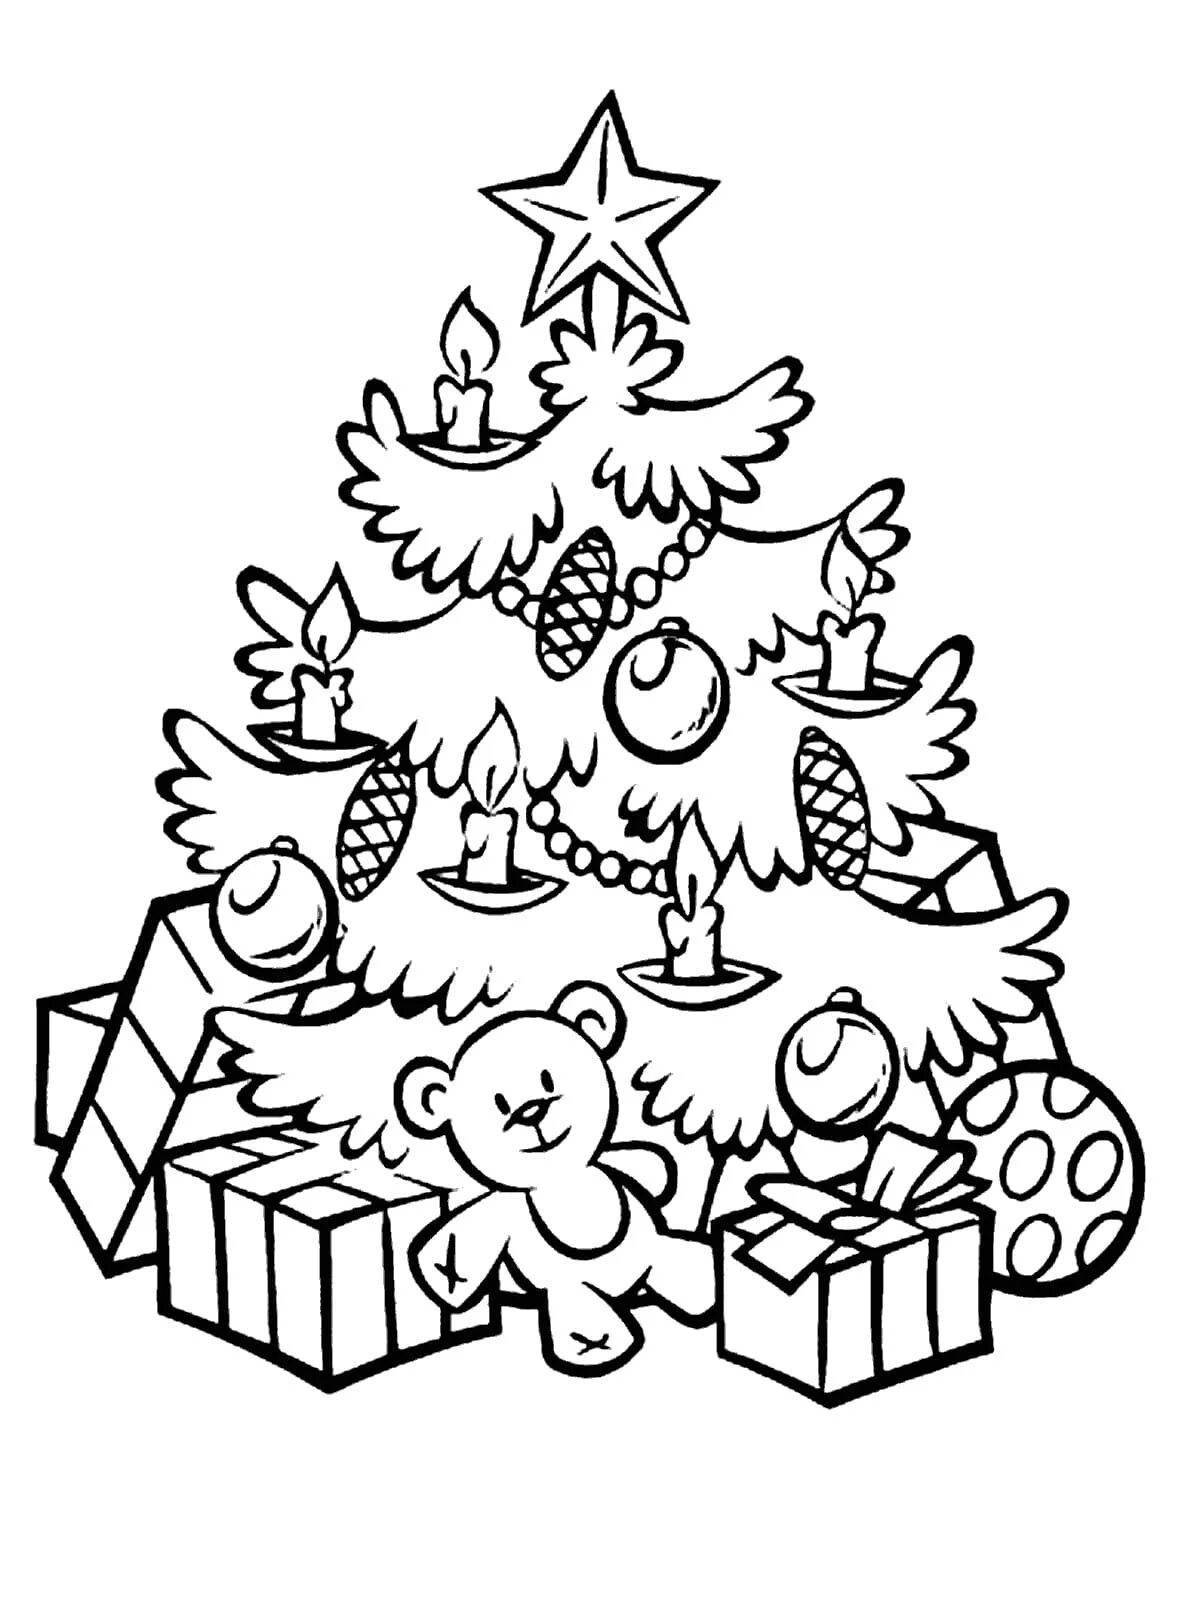 Роскошная новогодняя елка с игрушками